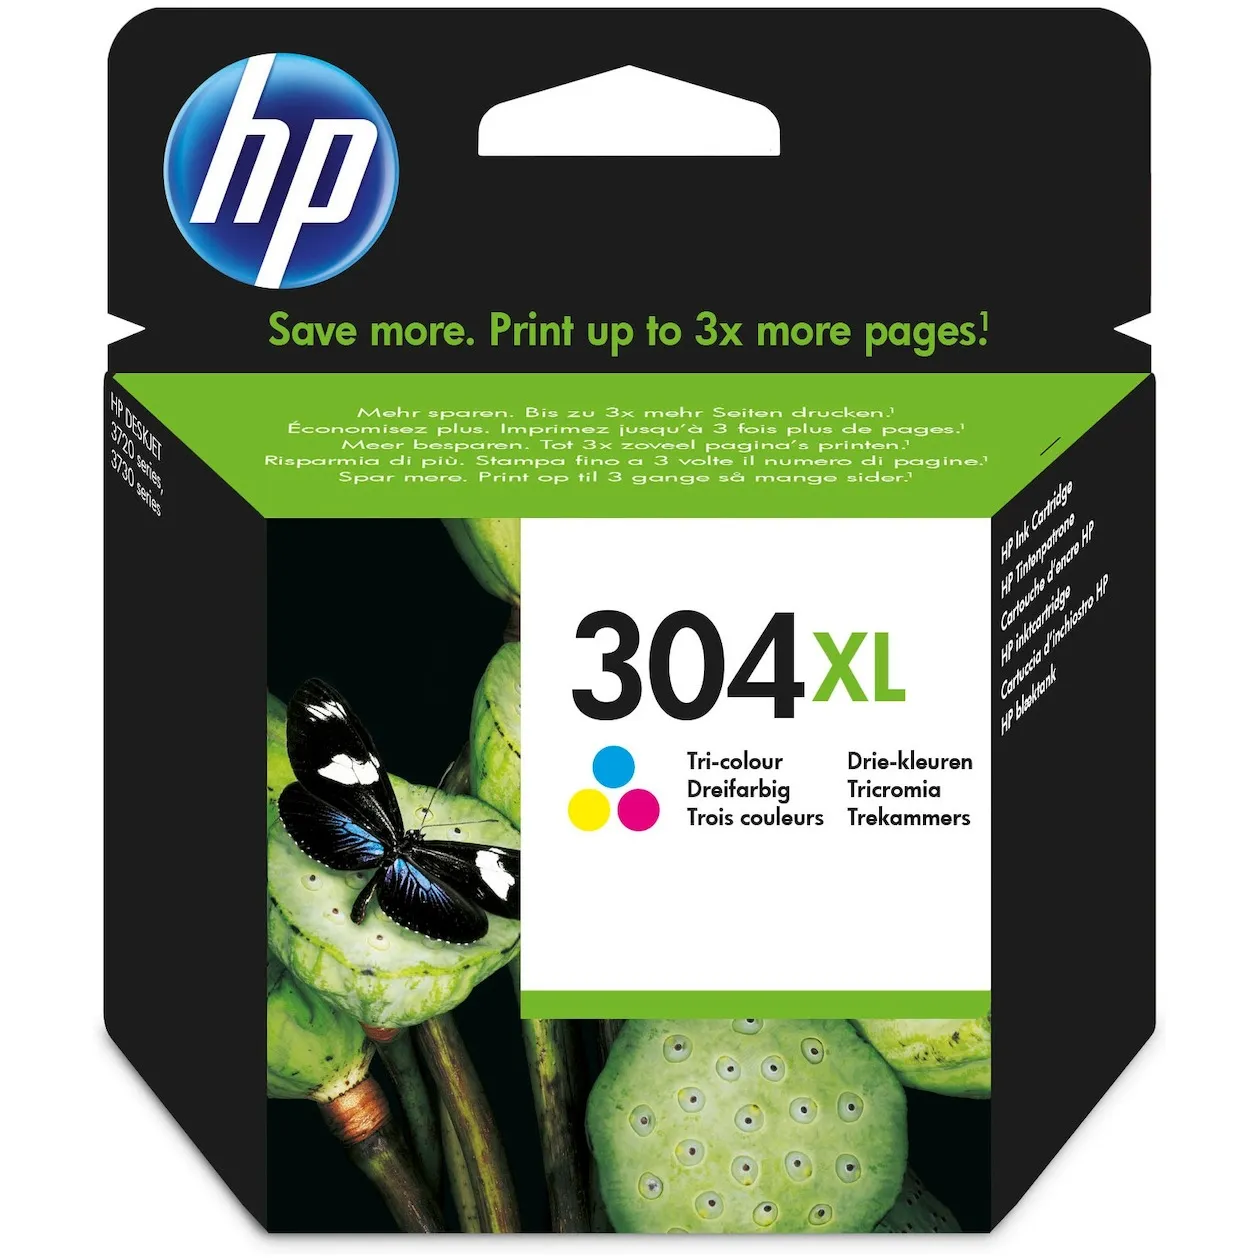 HP 304XL Kleur